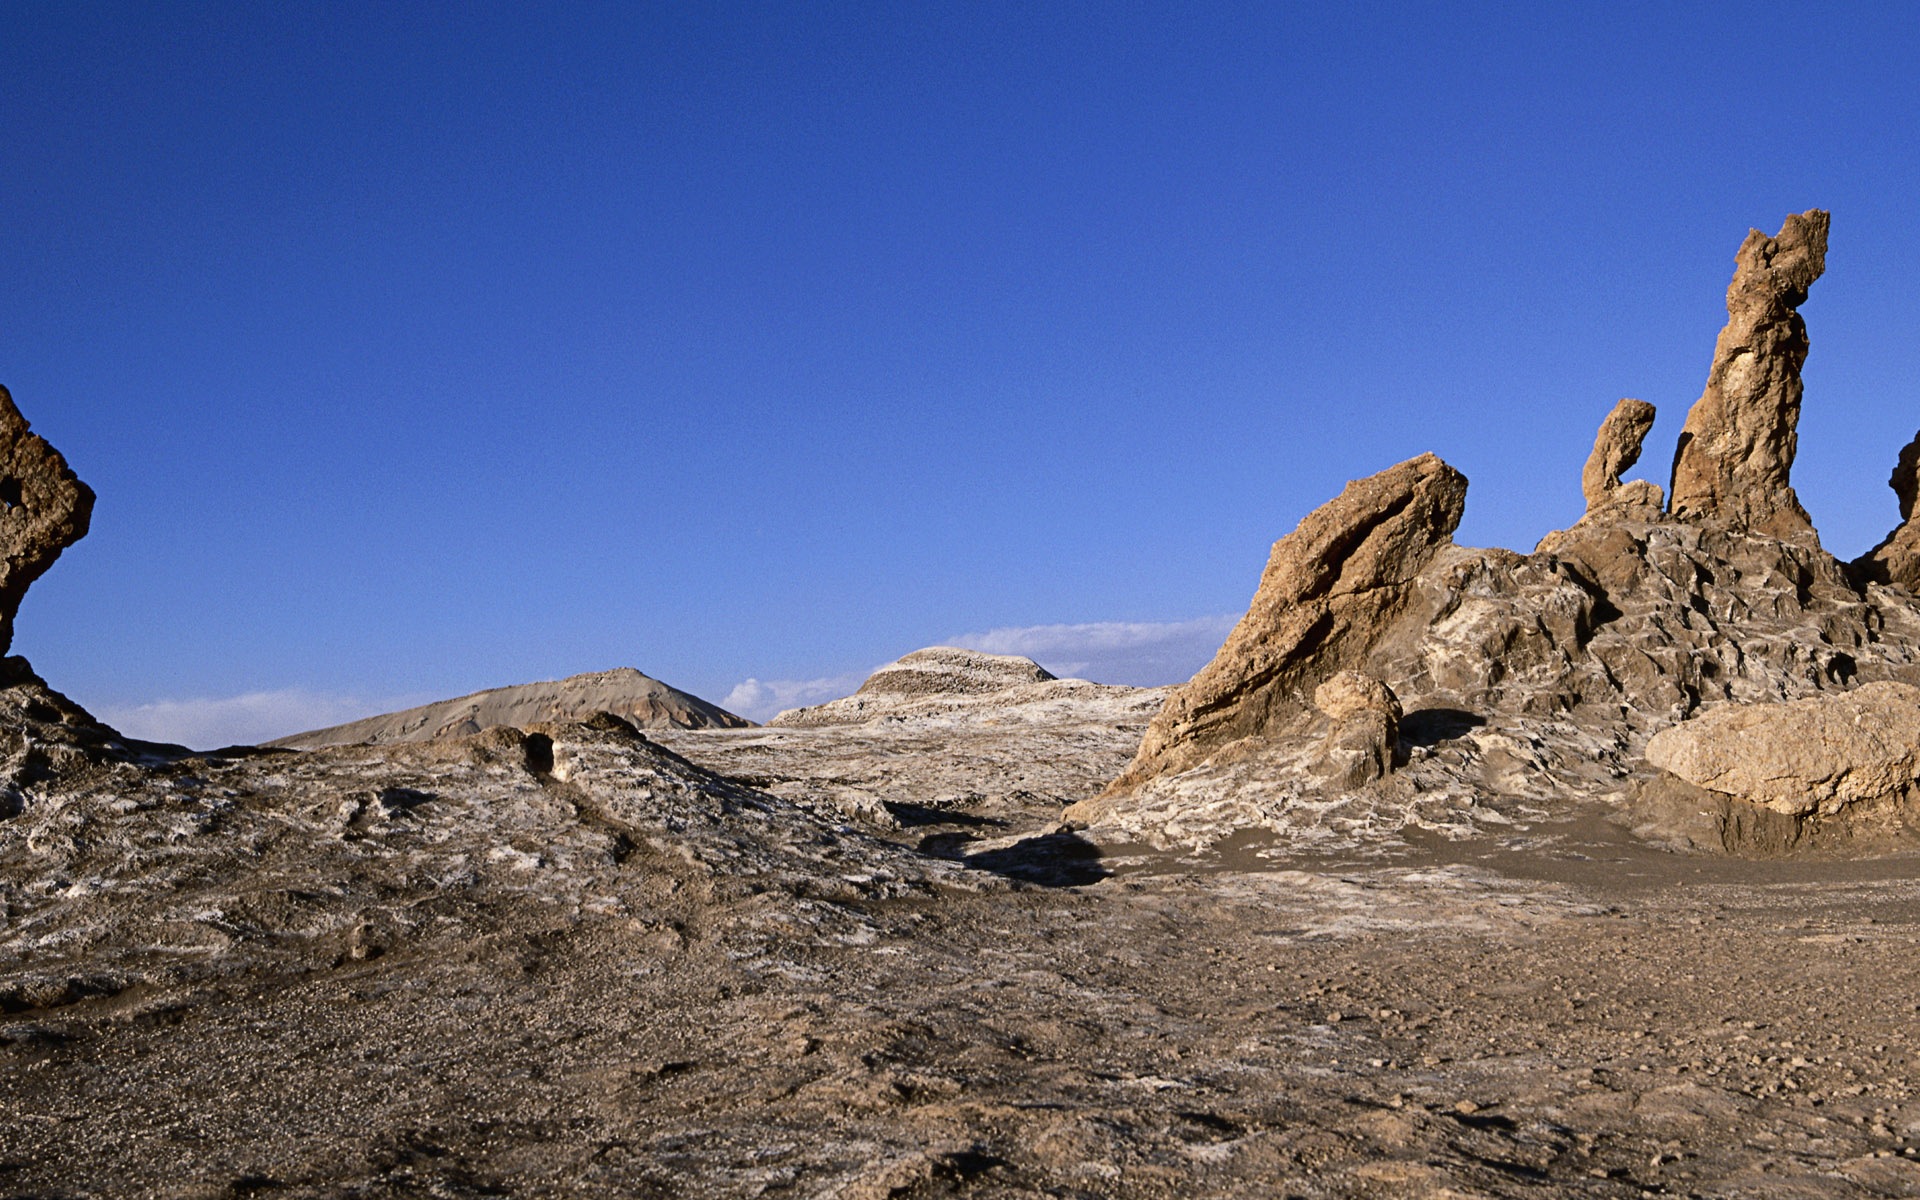 Les déserts chauds et arides, de Windows 8 fonds d'écran widescreen panoramique #11 - 1920x1200